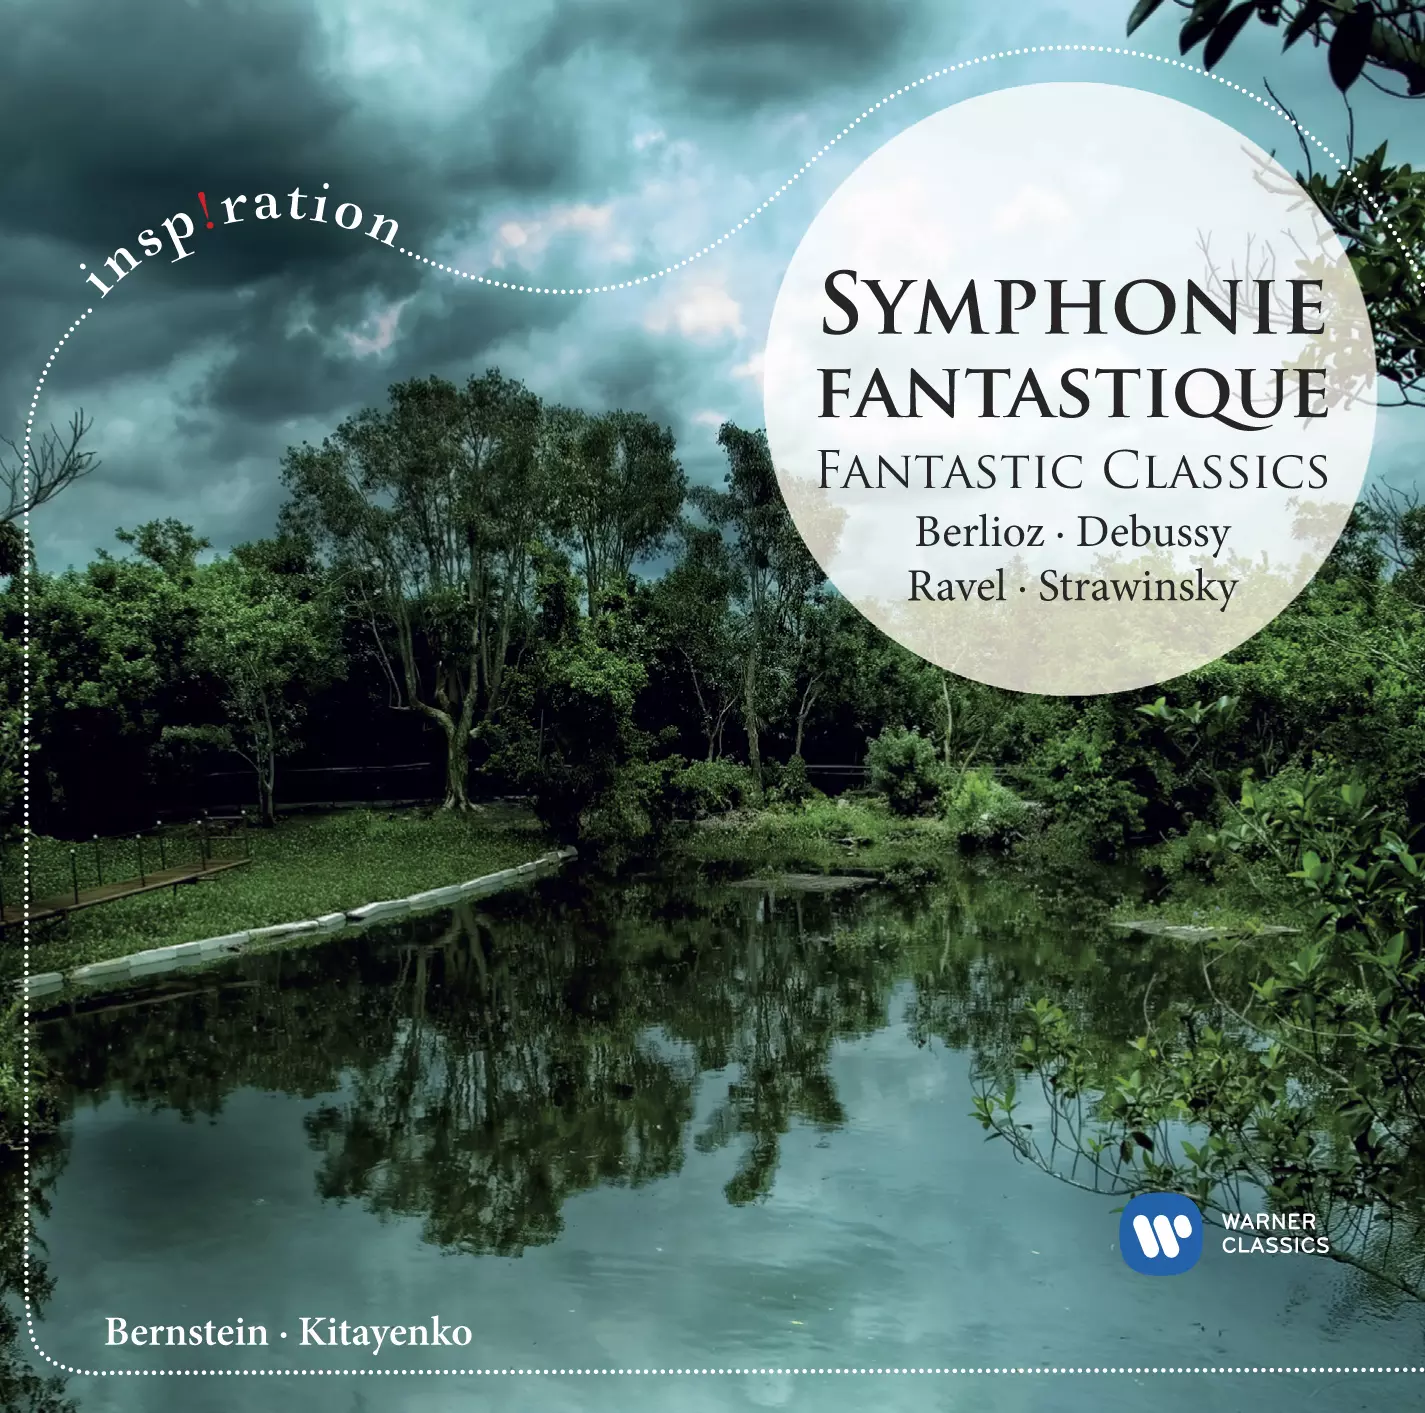 Symphonie fantastique: Fantastic Classics